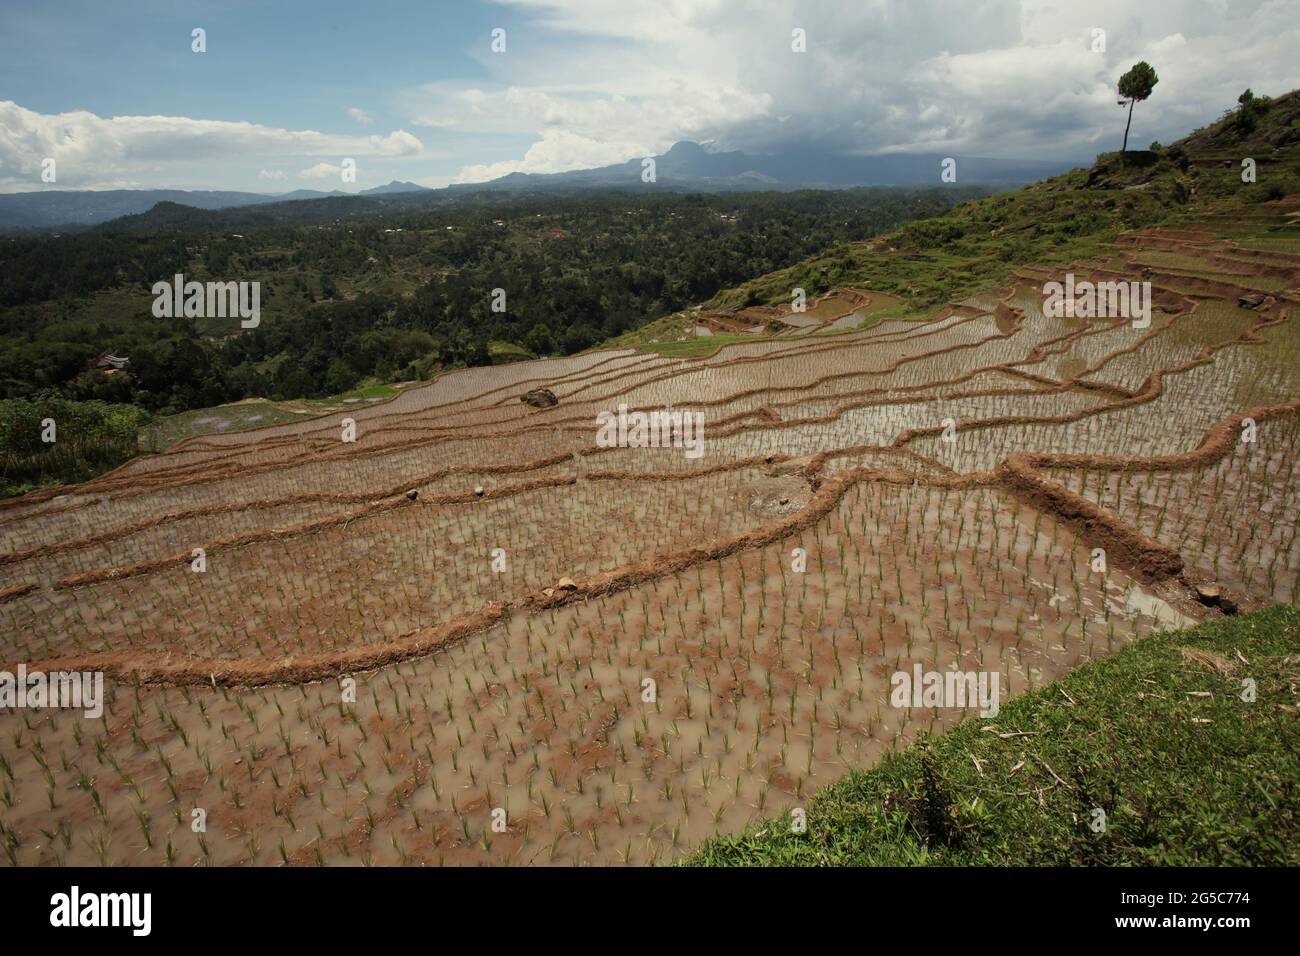 Reisterrassen an einem trockenen Oktobertag in der Nähe von Bambalu, Tana Toraja, Süd-Sulawesi, Indonesien. Höhere Temperaturen, die durch die globale Erwärmung verursacht werden, dürften die Reiserträge in Indonesien verringern. Veränderungen der El-Nino-Muster, die den Beginn und die Dauer der Regenzeit beeinflussen, bringen auch die landwirtschaftliche Produktion in einen anfälligen Status. Die Entwicklung neuer oder verbesserter lokaler Reissorten, die widerstandsfähiger sind - wie jüngste Studien in anderen Ländern - könnte einer der Schlüssel zur Milderung sein. Stockfoto